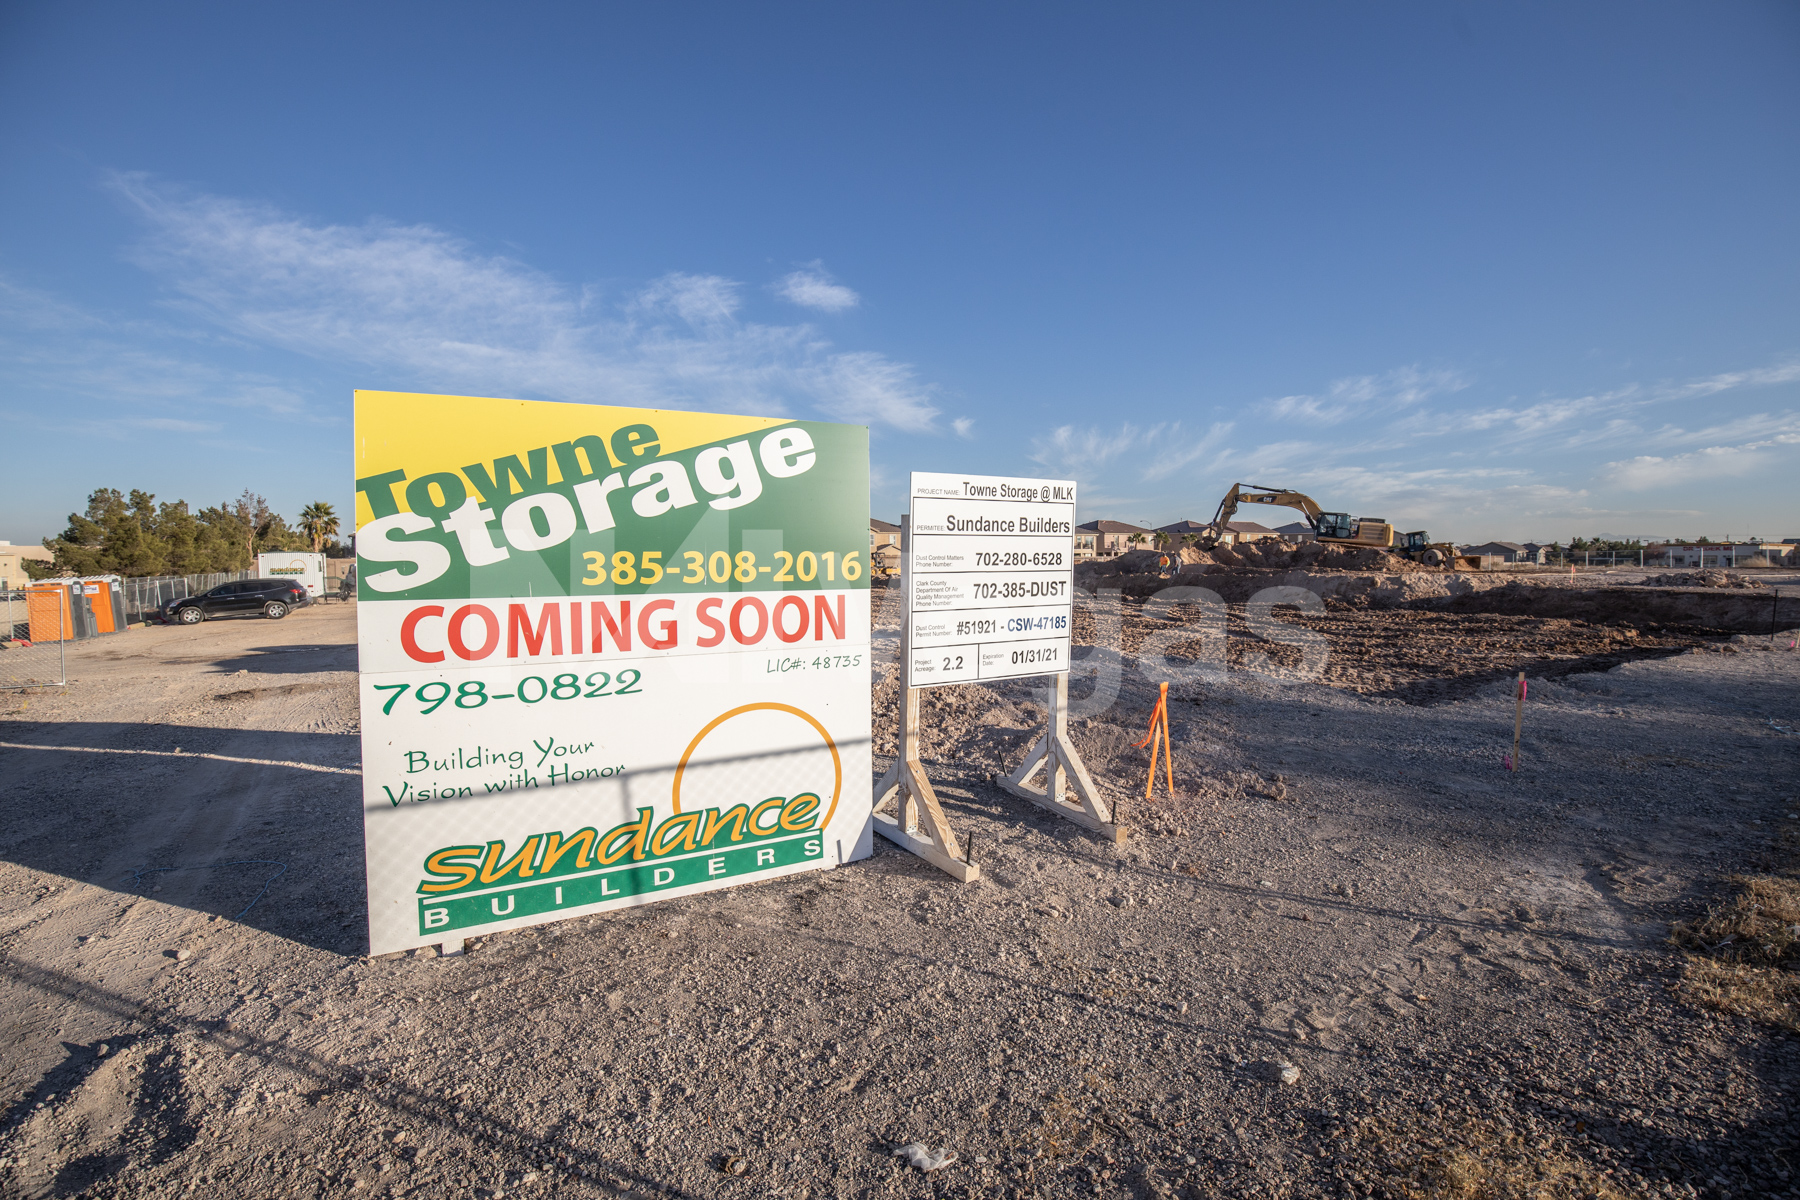 Towne Storage coming soon in North Las Vegas